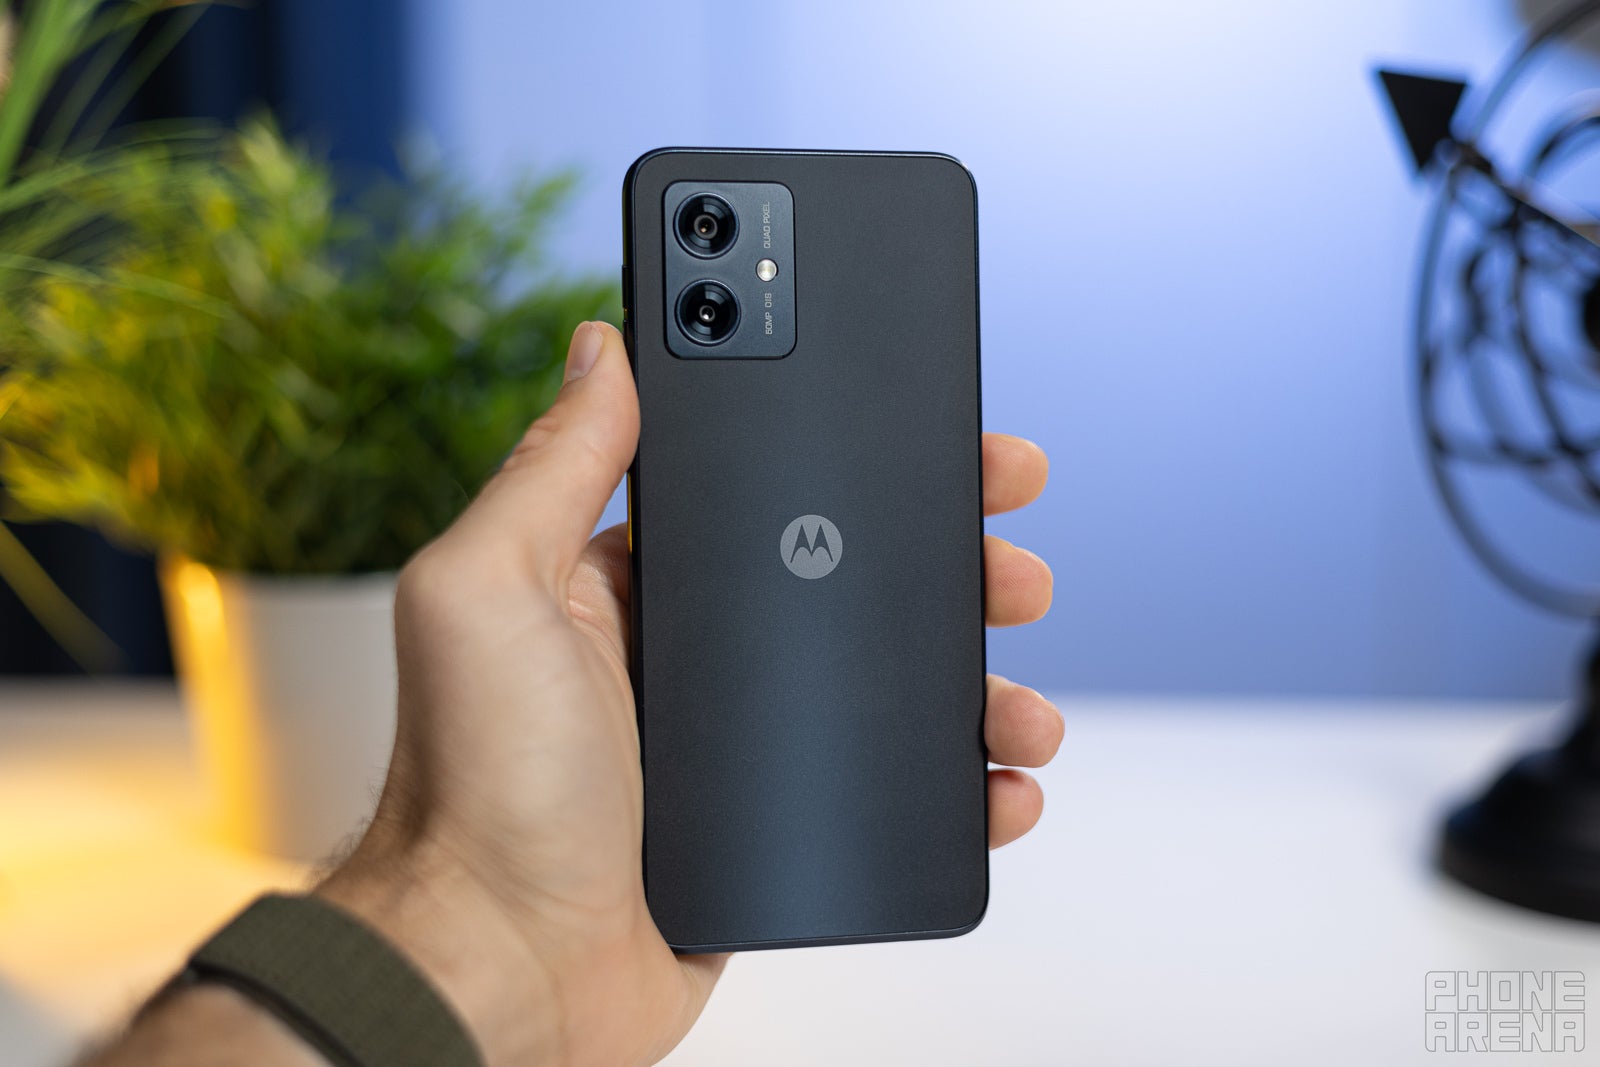 Motorola Moto G54 5G review - PhoneArena